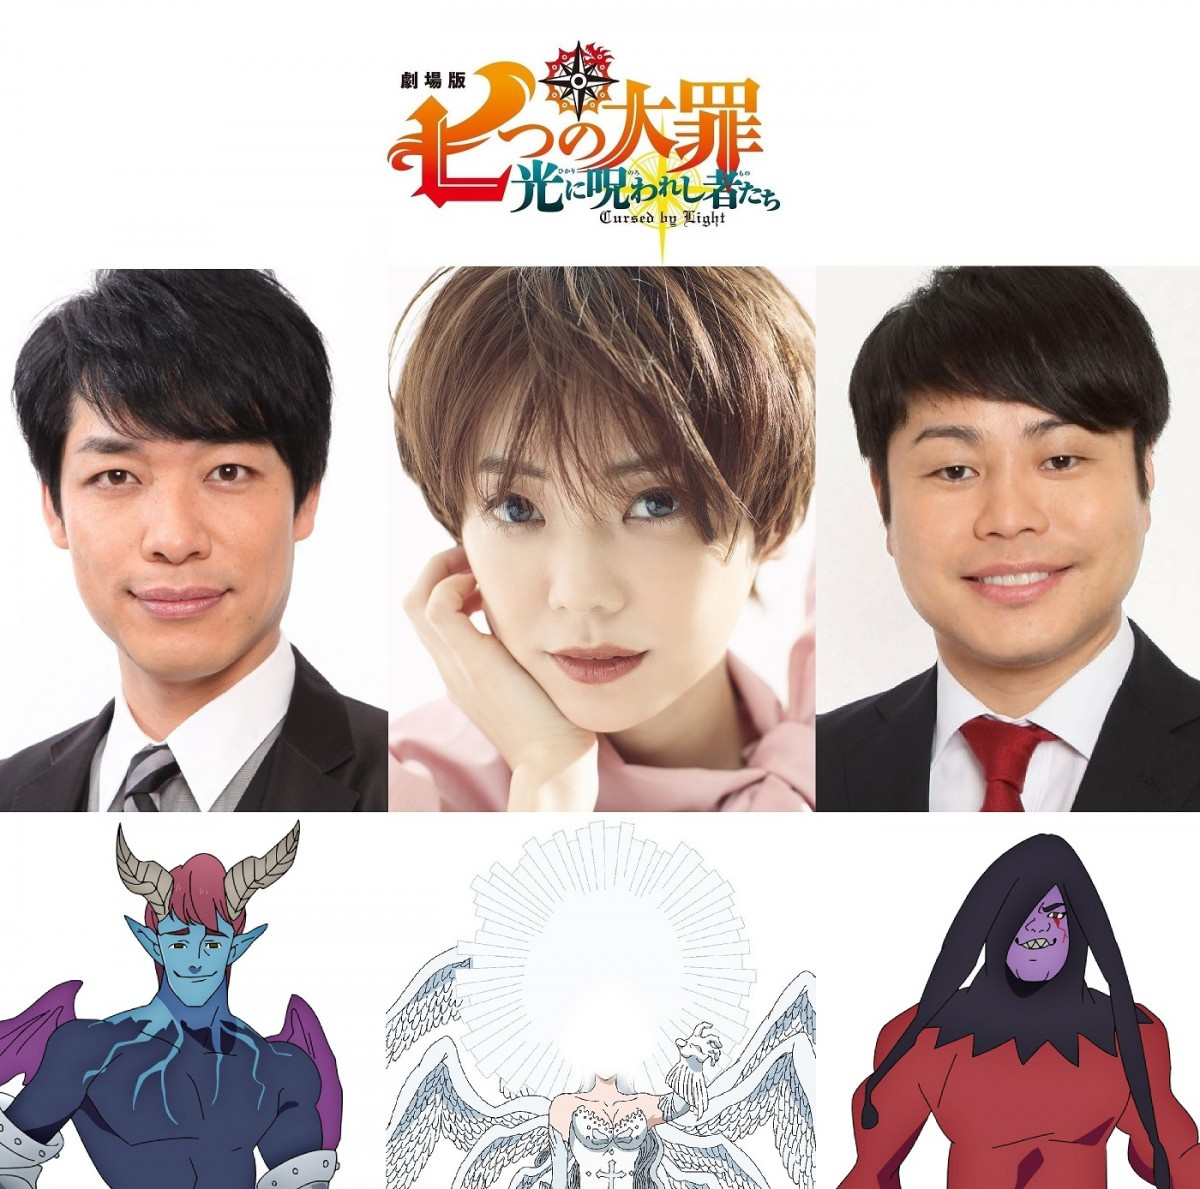 倉科カナ 七つの大罪 でアニメ映画声優に初挑戦 女神族を総べる 最高神 役 気を引き締めて Oricon News